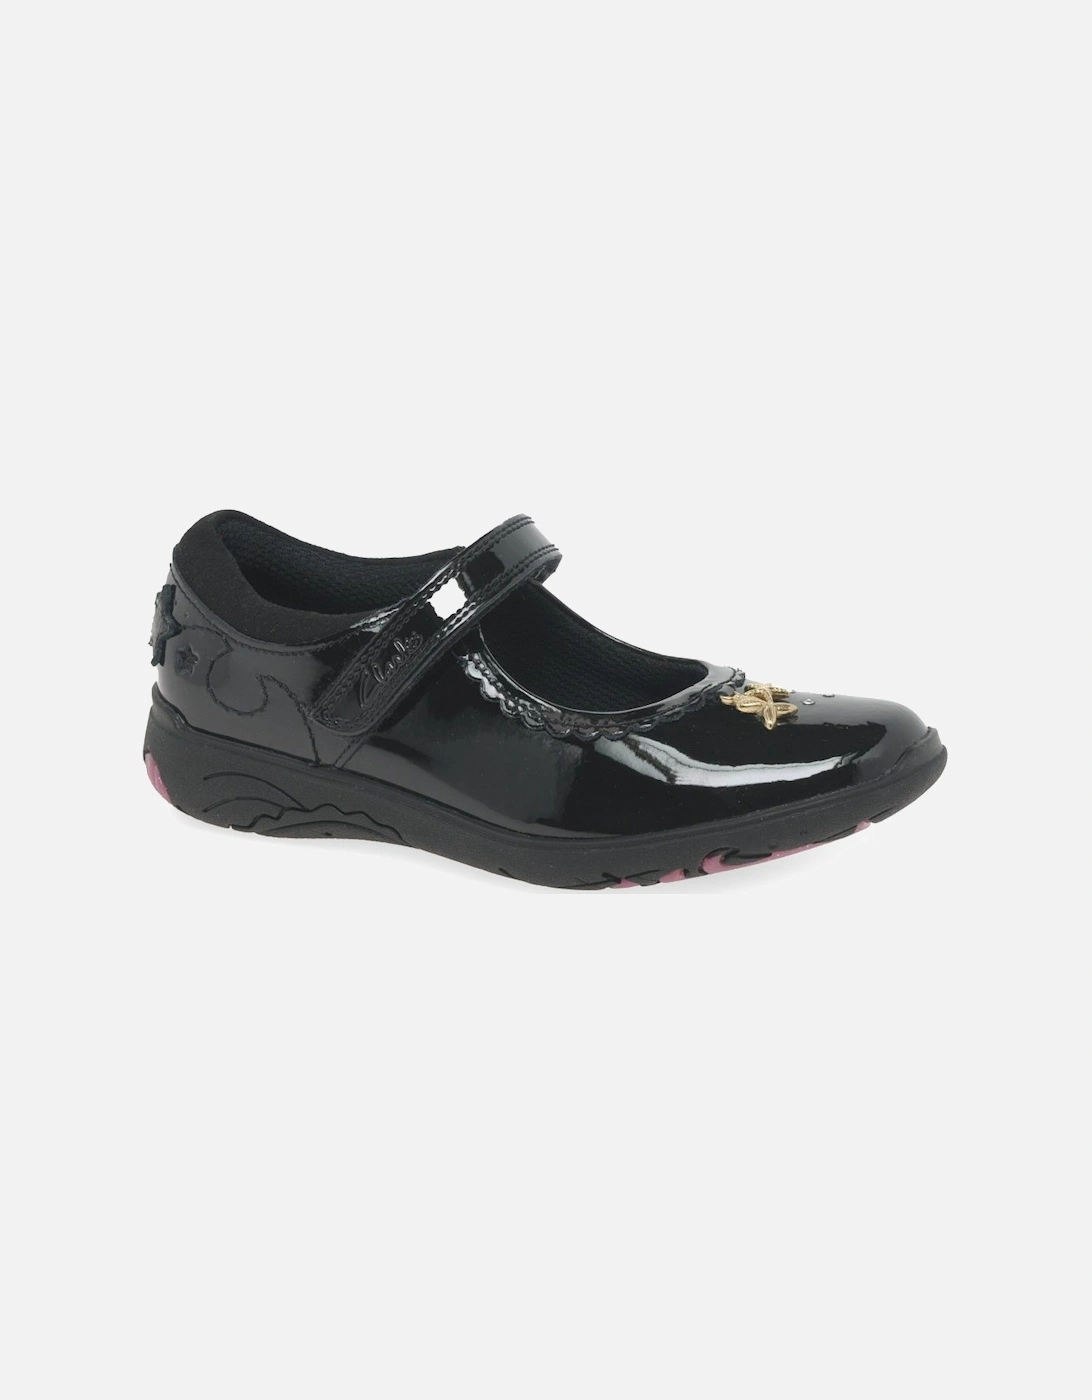 Relda Sea K Girls School Shoes, 8 of 7